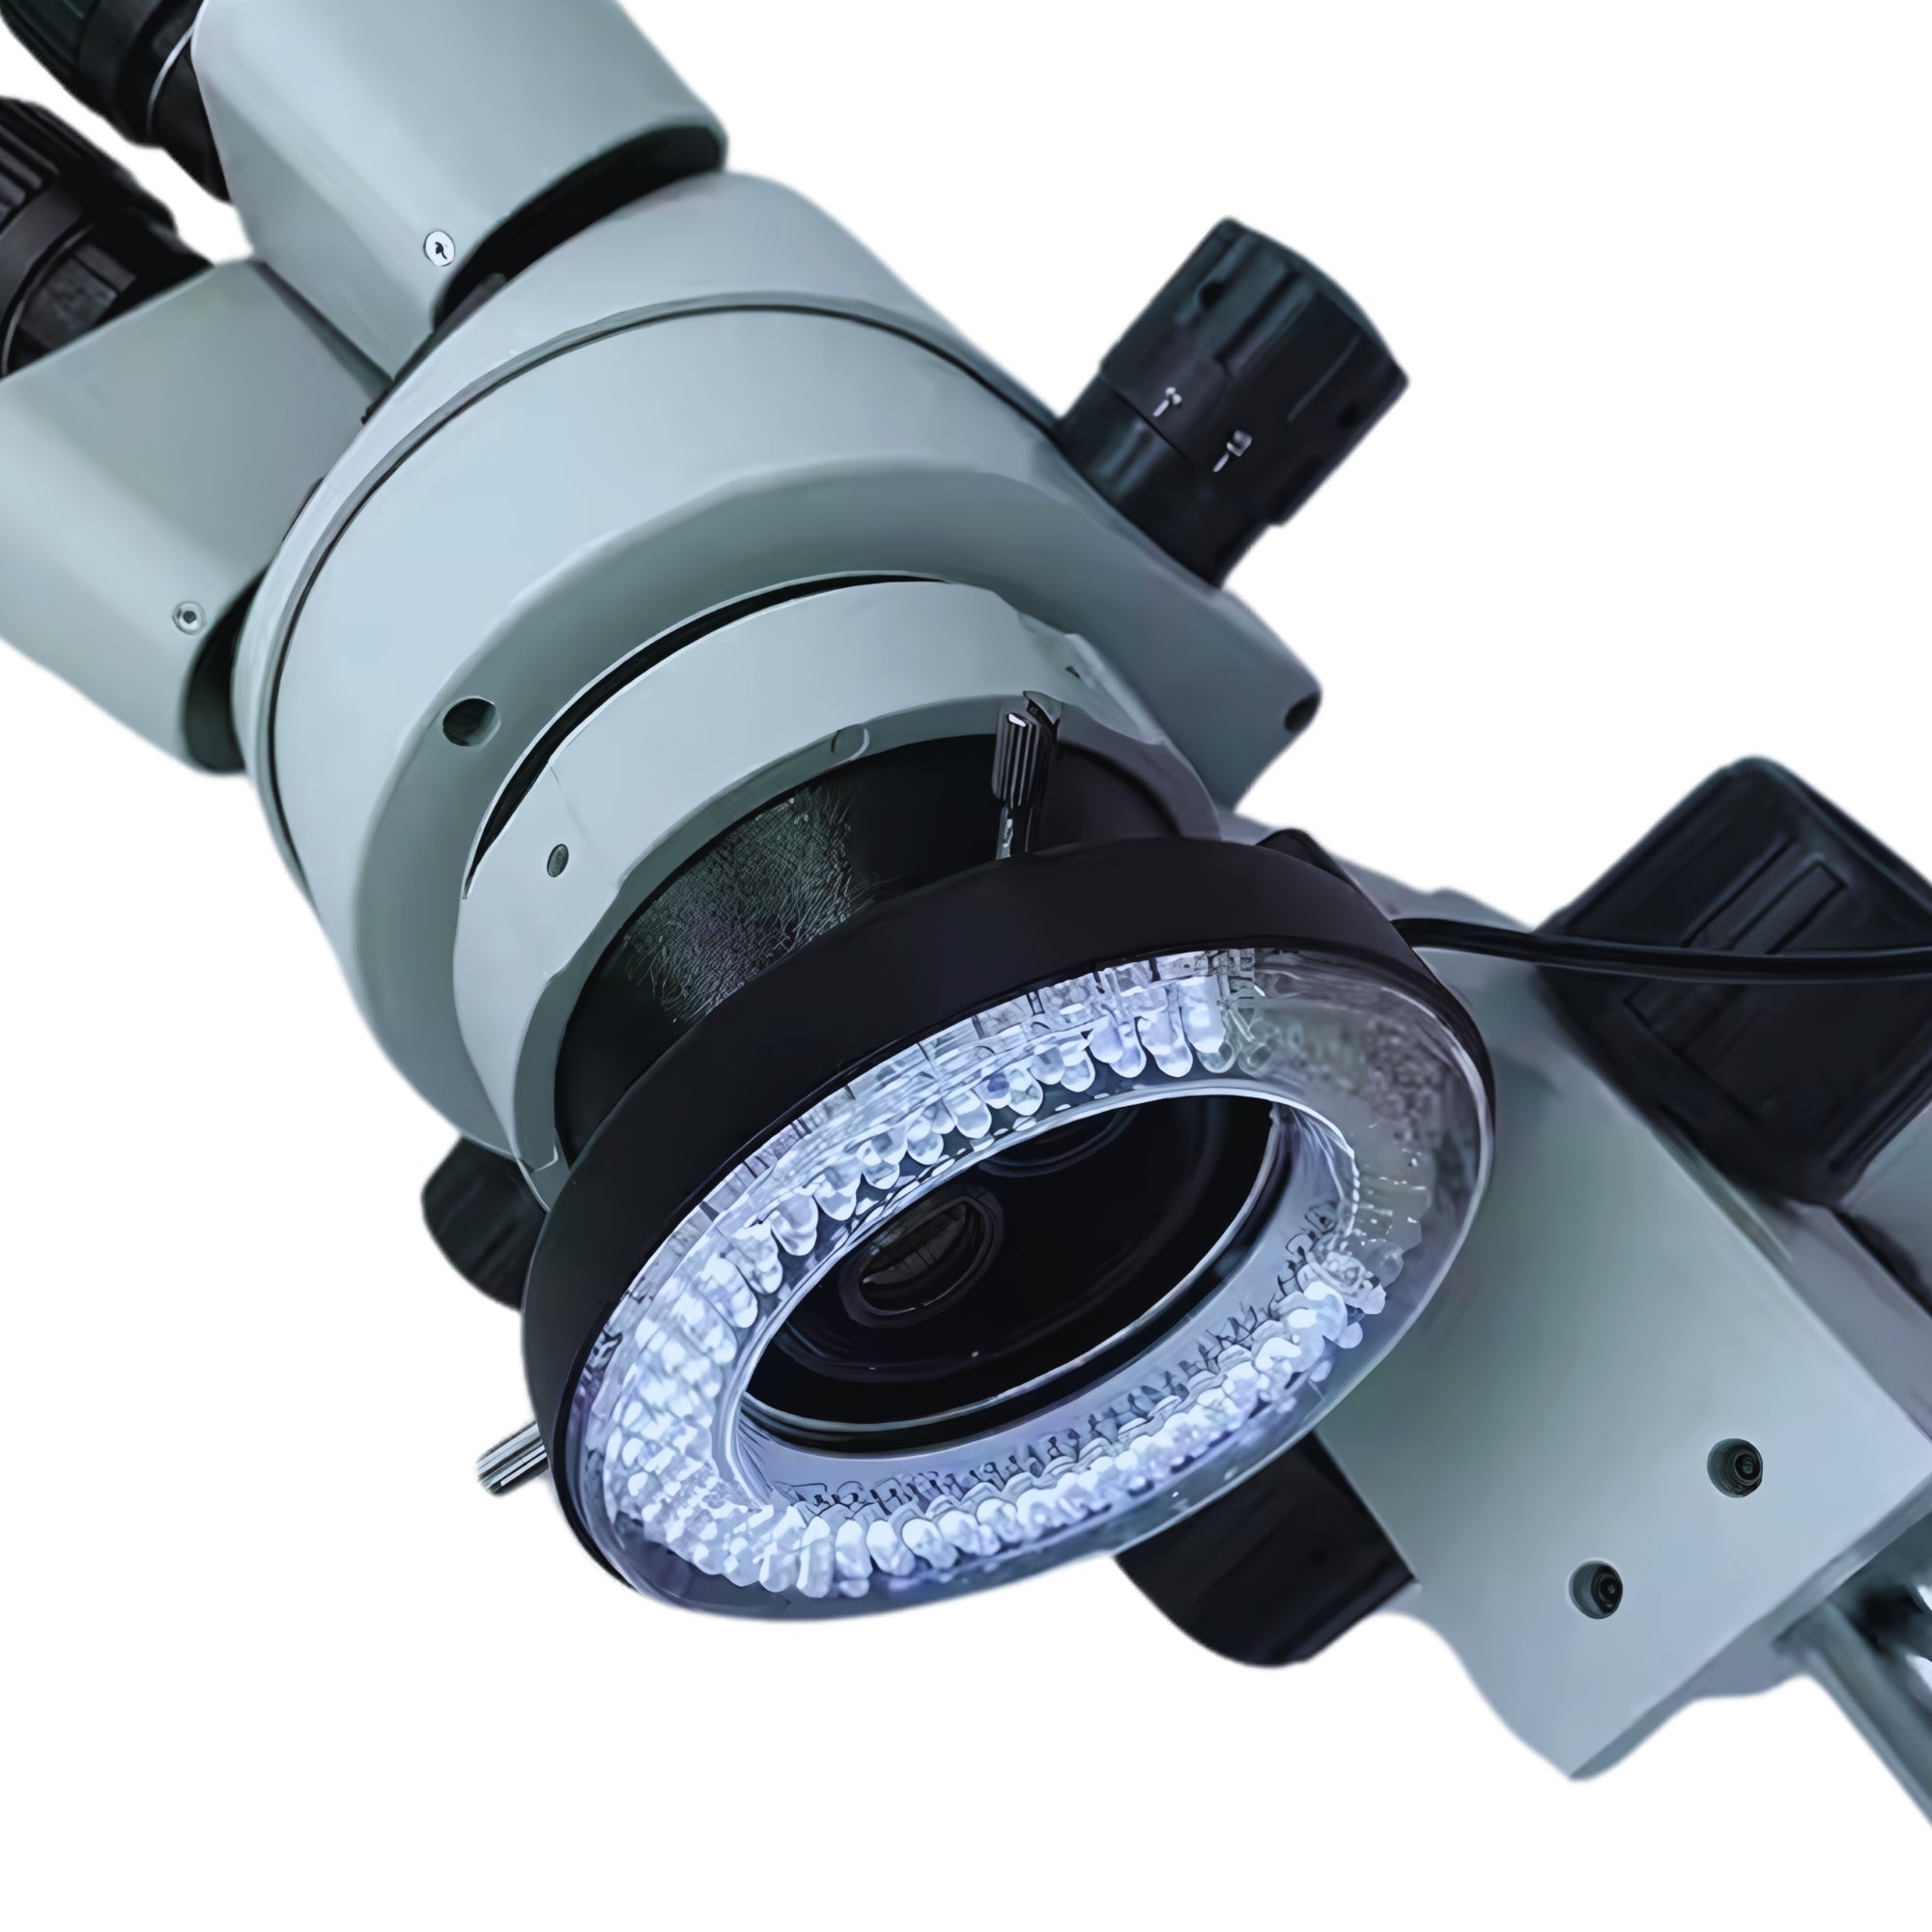 Iluminación adicional del microscopio: luz diurna y ultravioleta